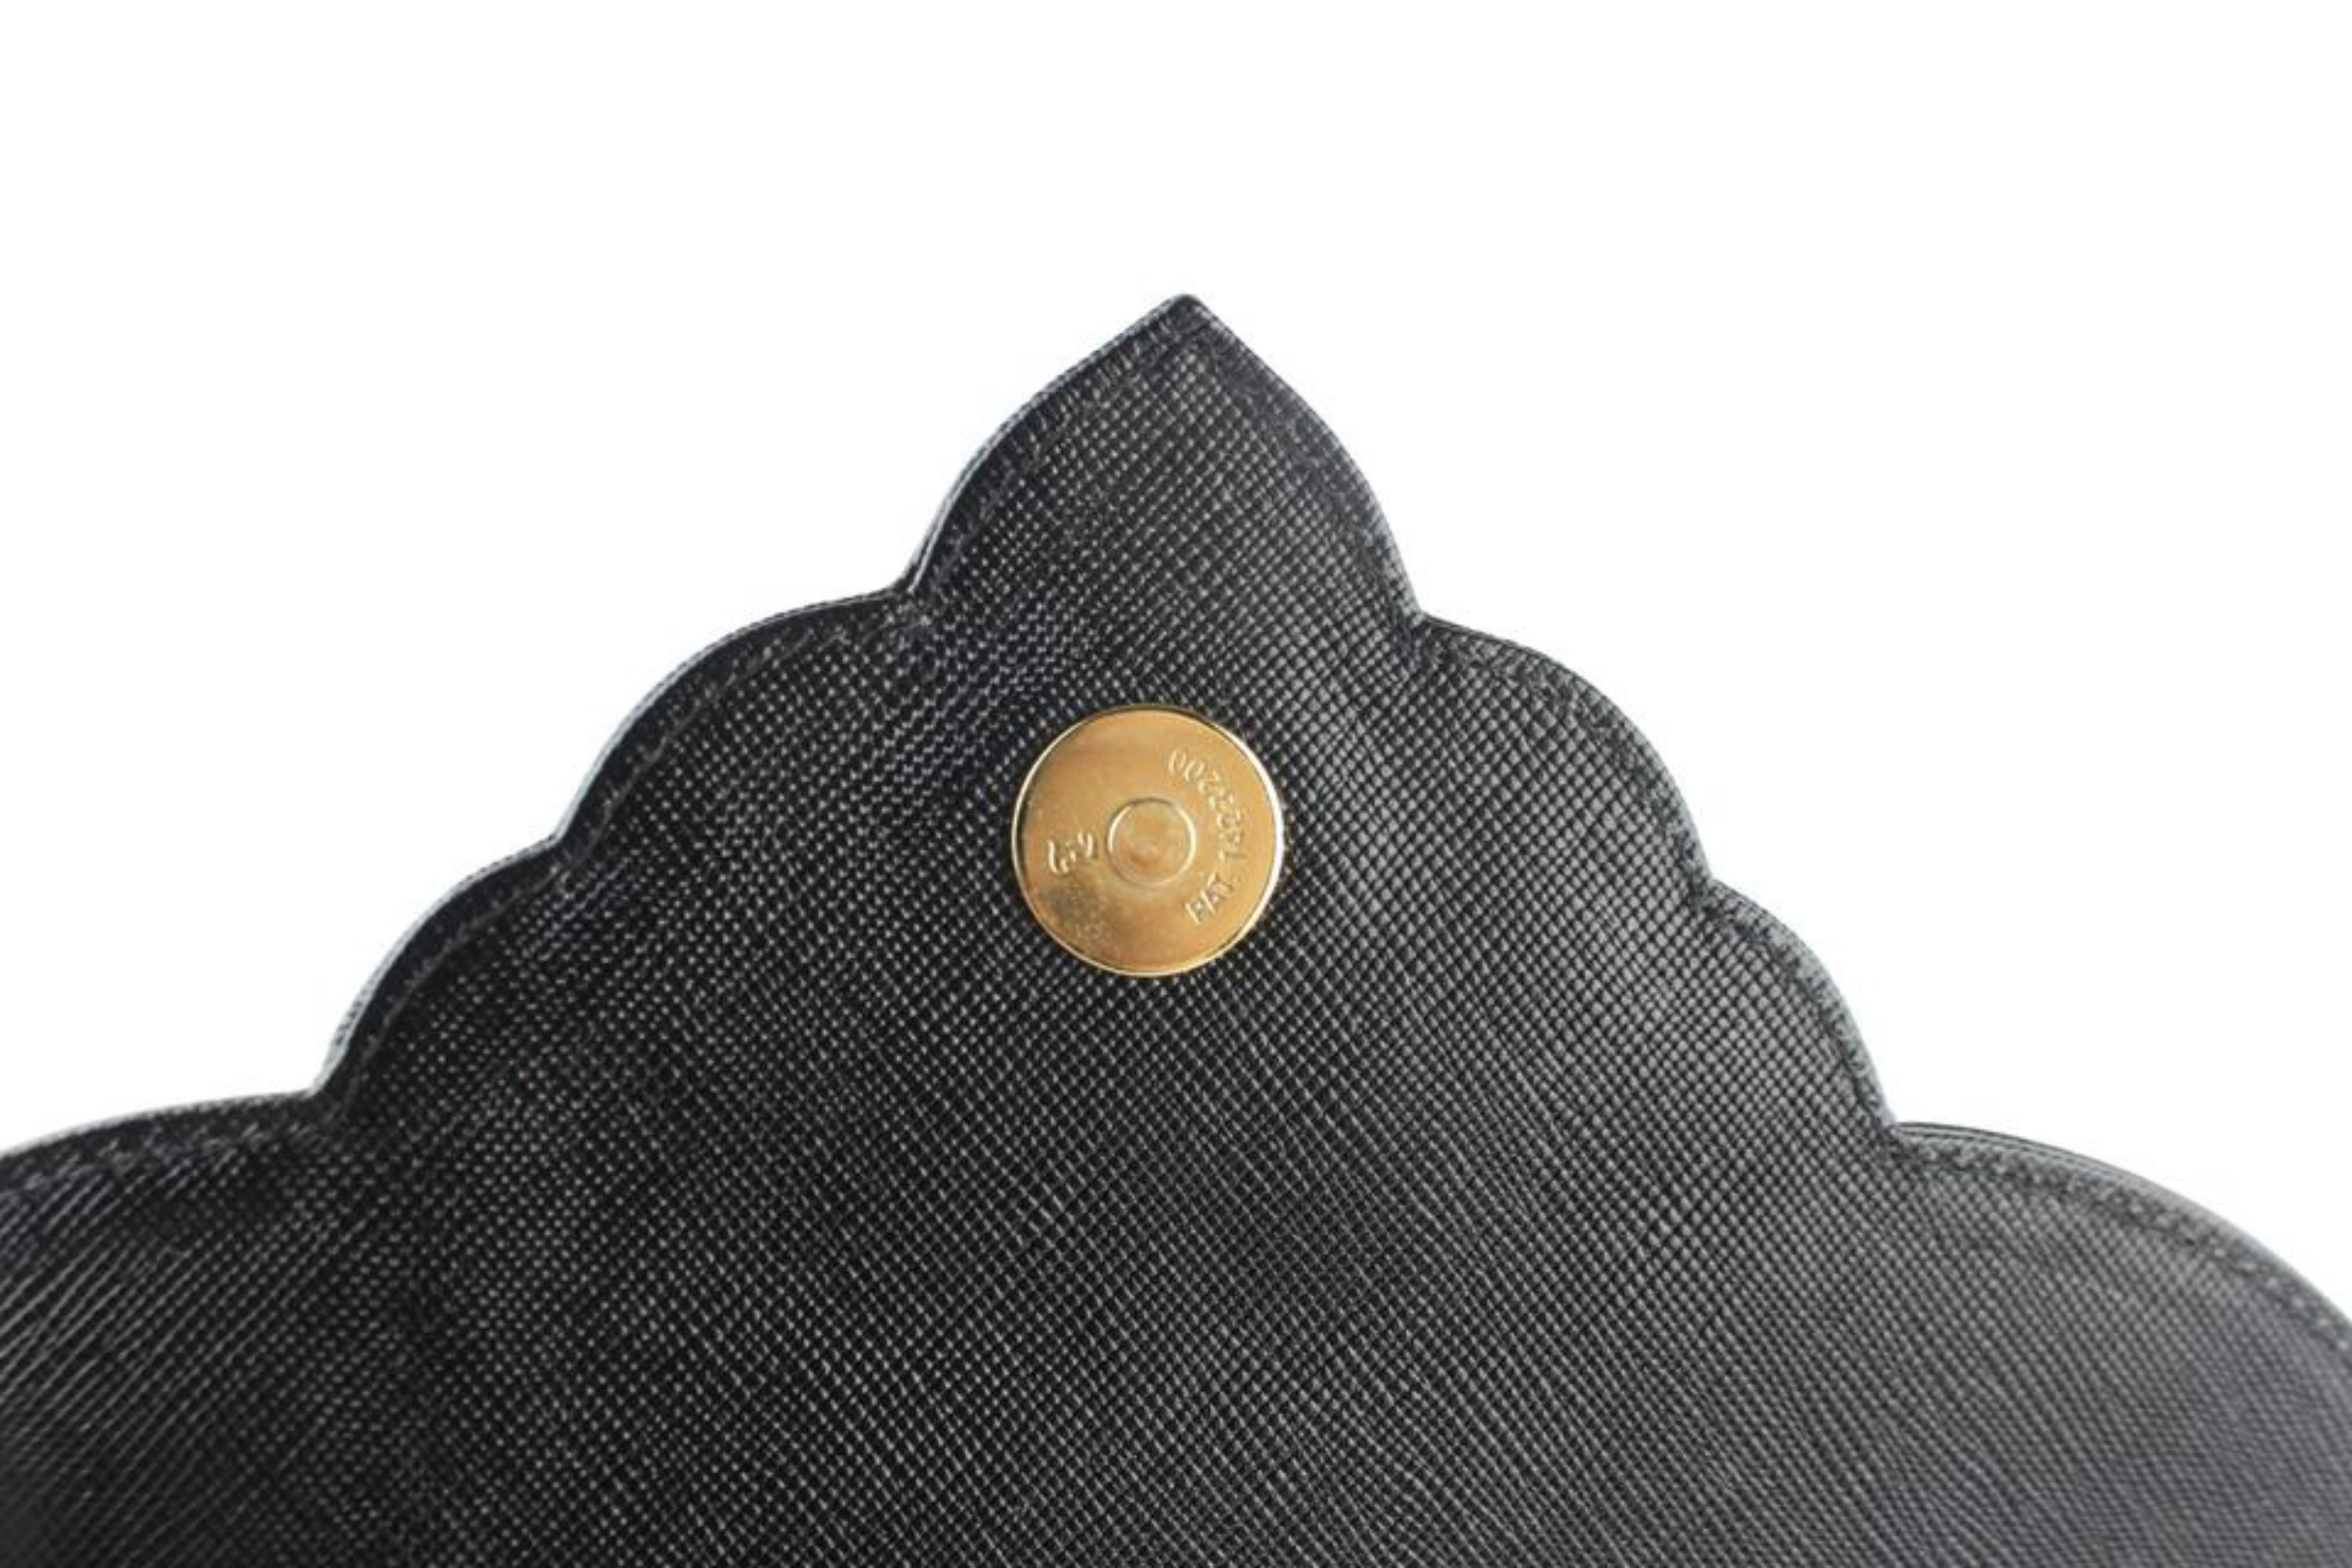 Saint Laurent Monogram Envelope Ysl Flap 14mz1812 Black Leather Clutch For Sale 8